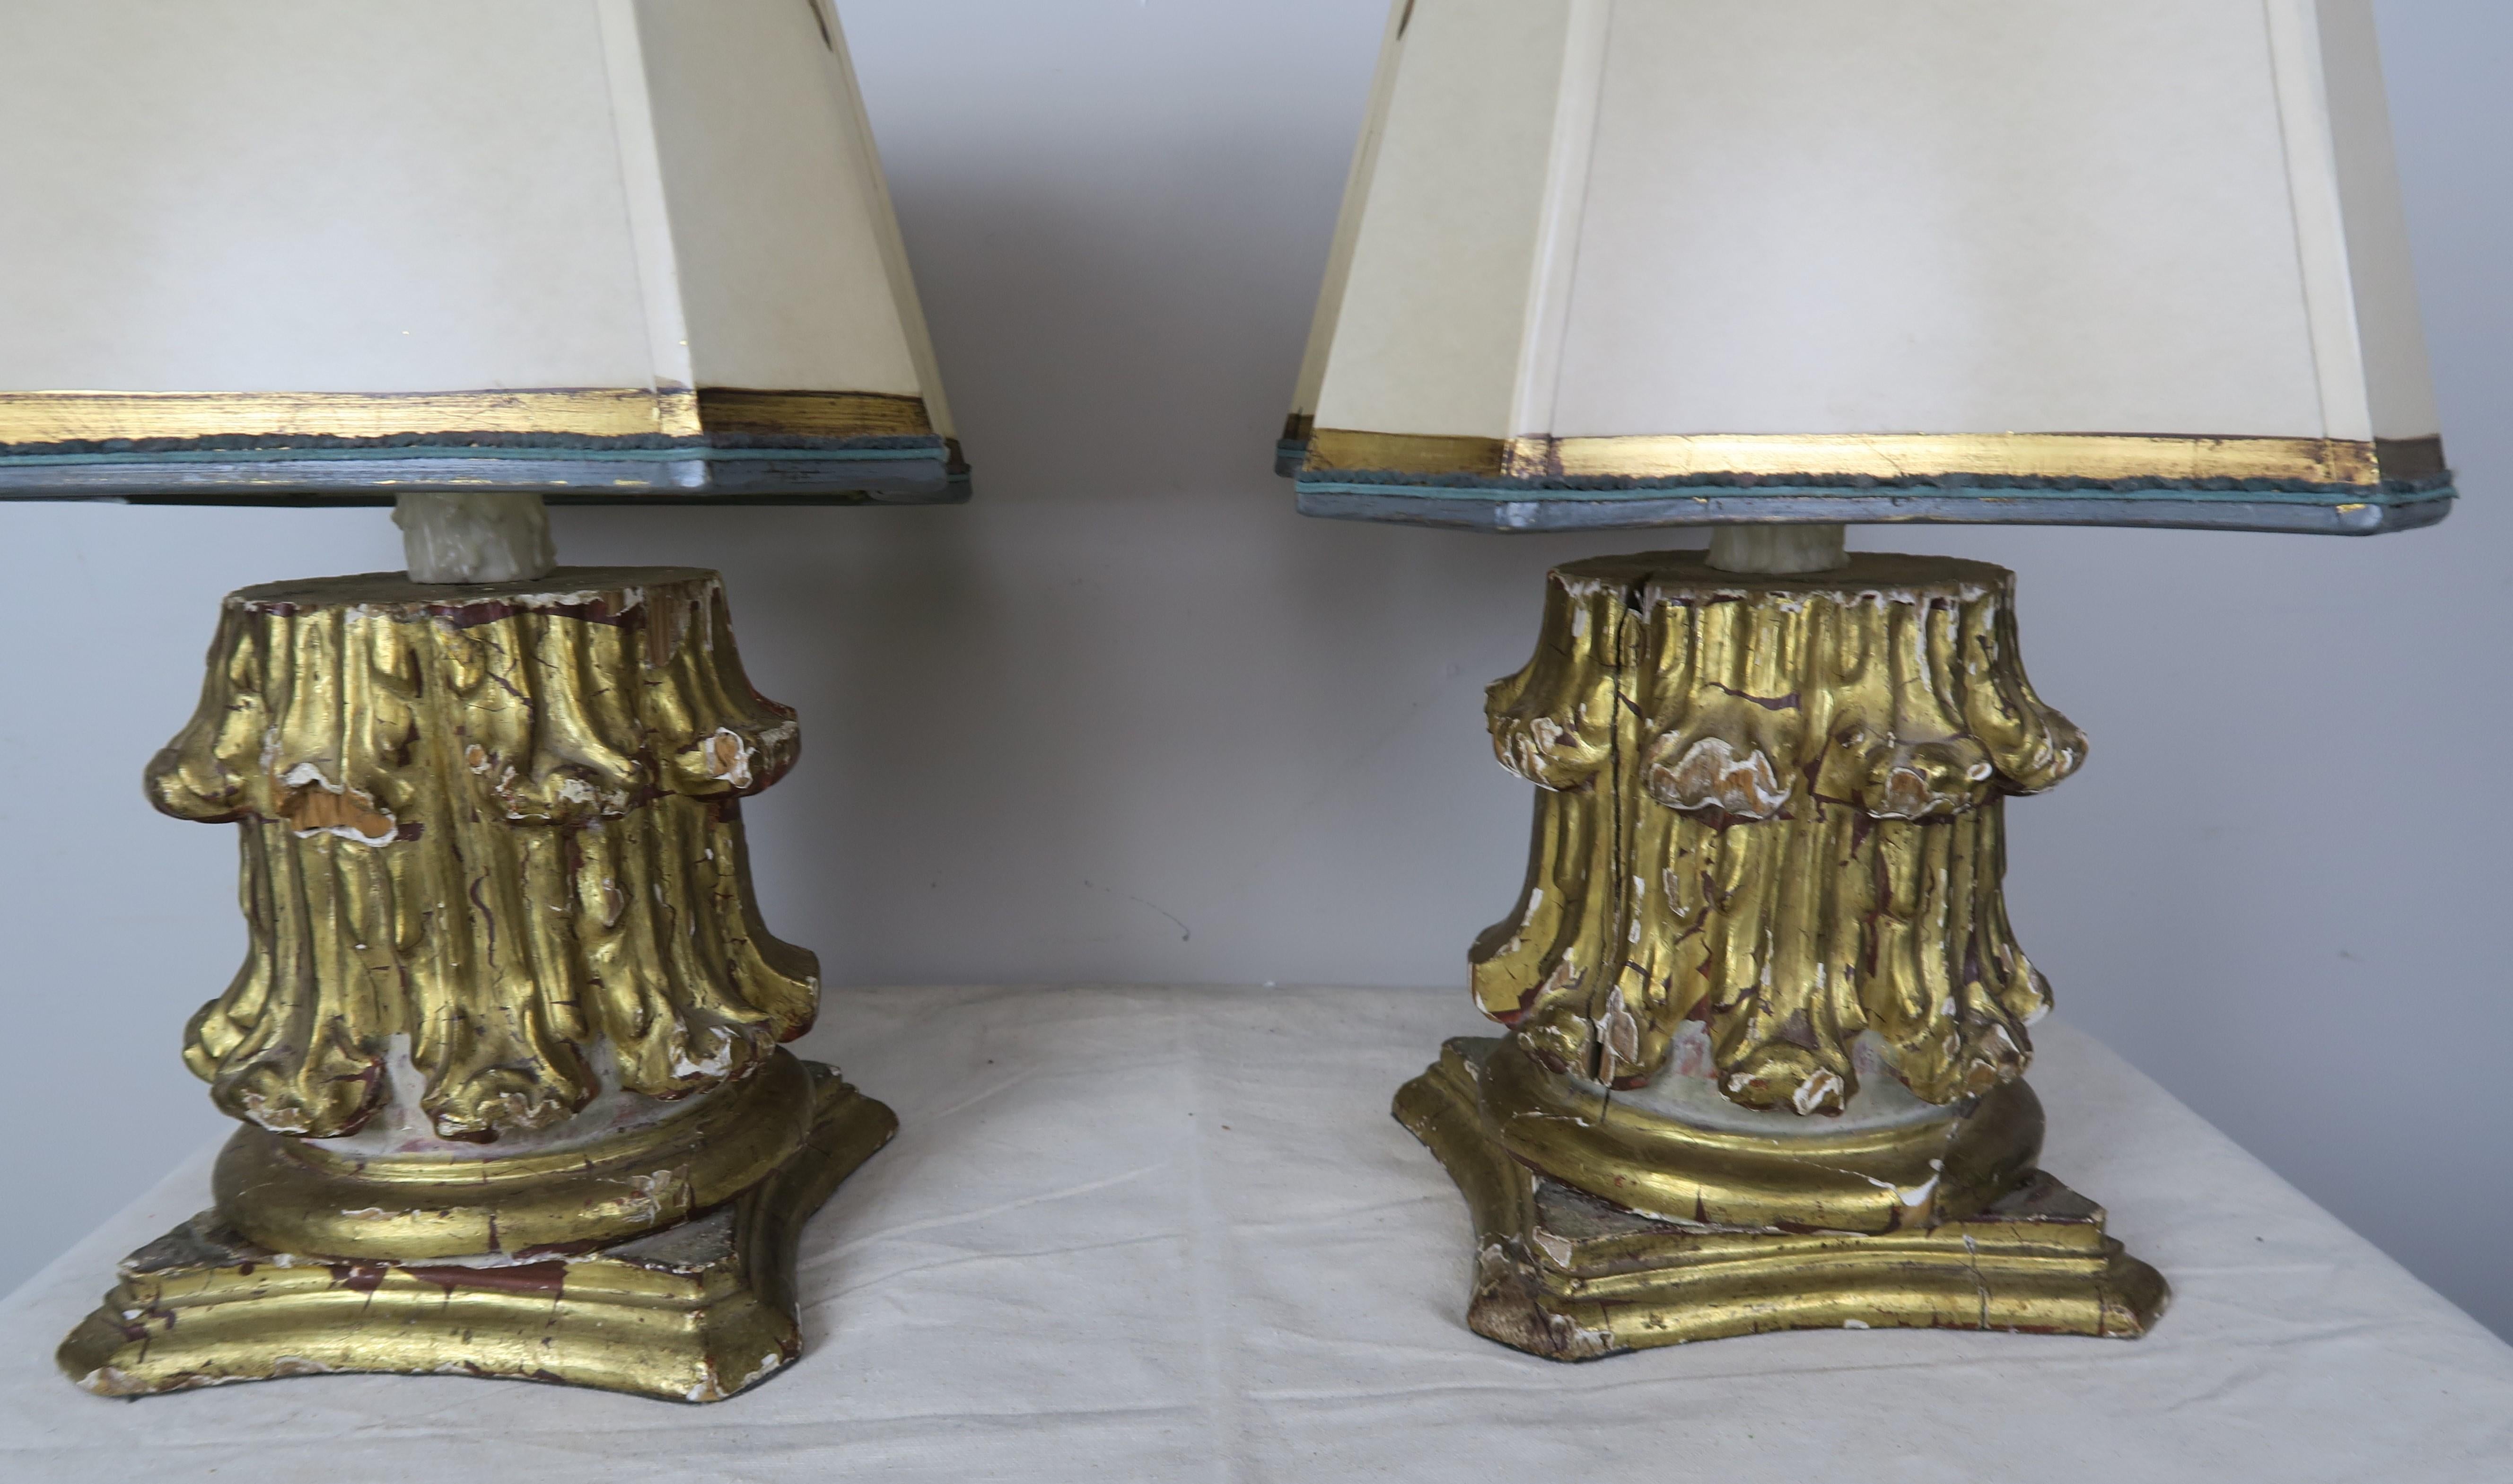 Paire de lampes faites sur mesure avec des chapiteaux en bois doré sculpté italien du 19ème siècle montés dans des lampes contemporaines et couronnés d'abat-jour en parchemin peints à la main et détaillés en or, de forme carrée unique pour